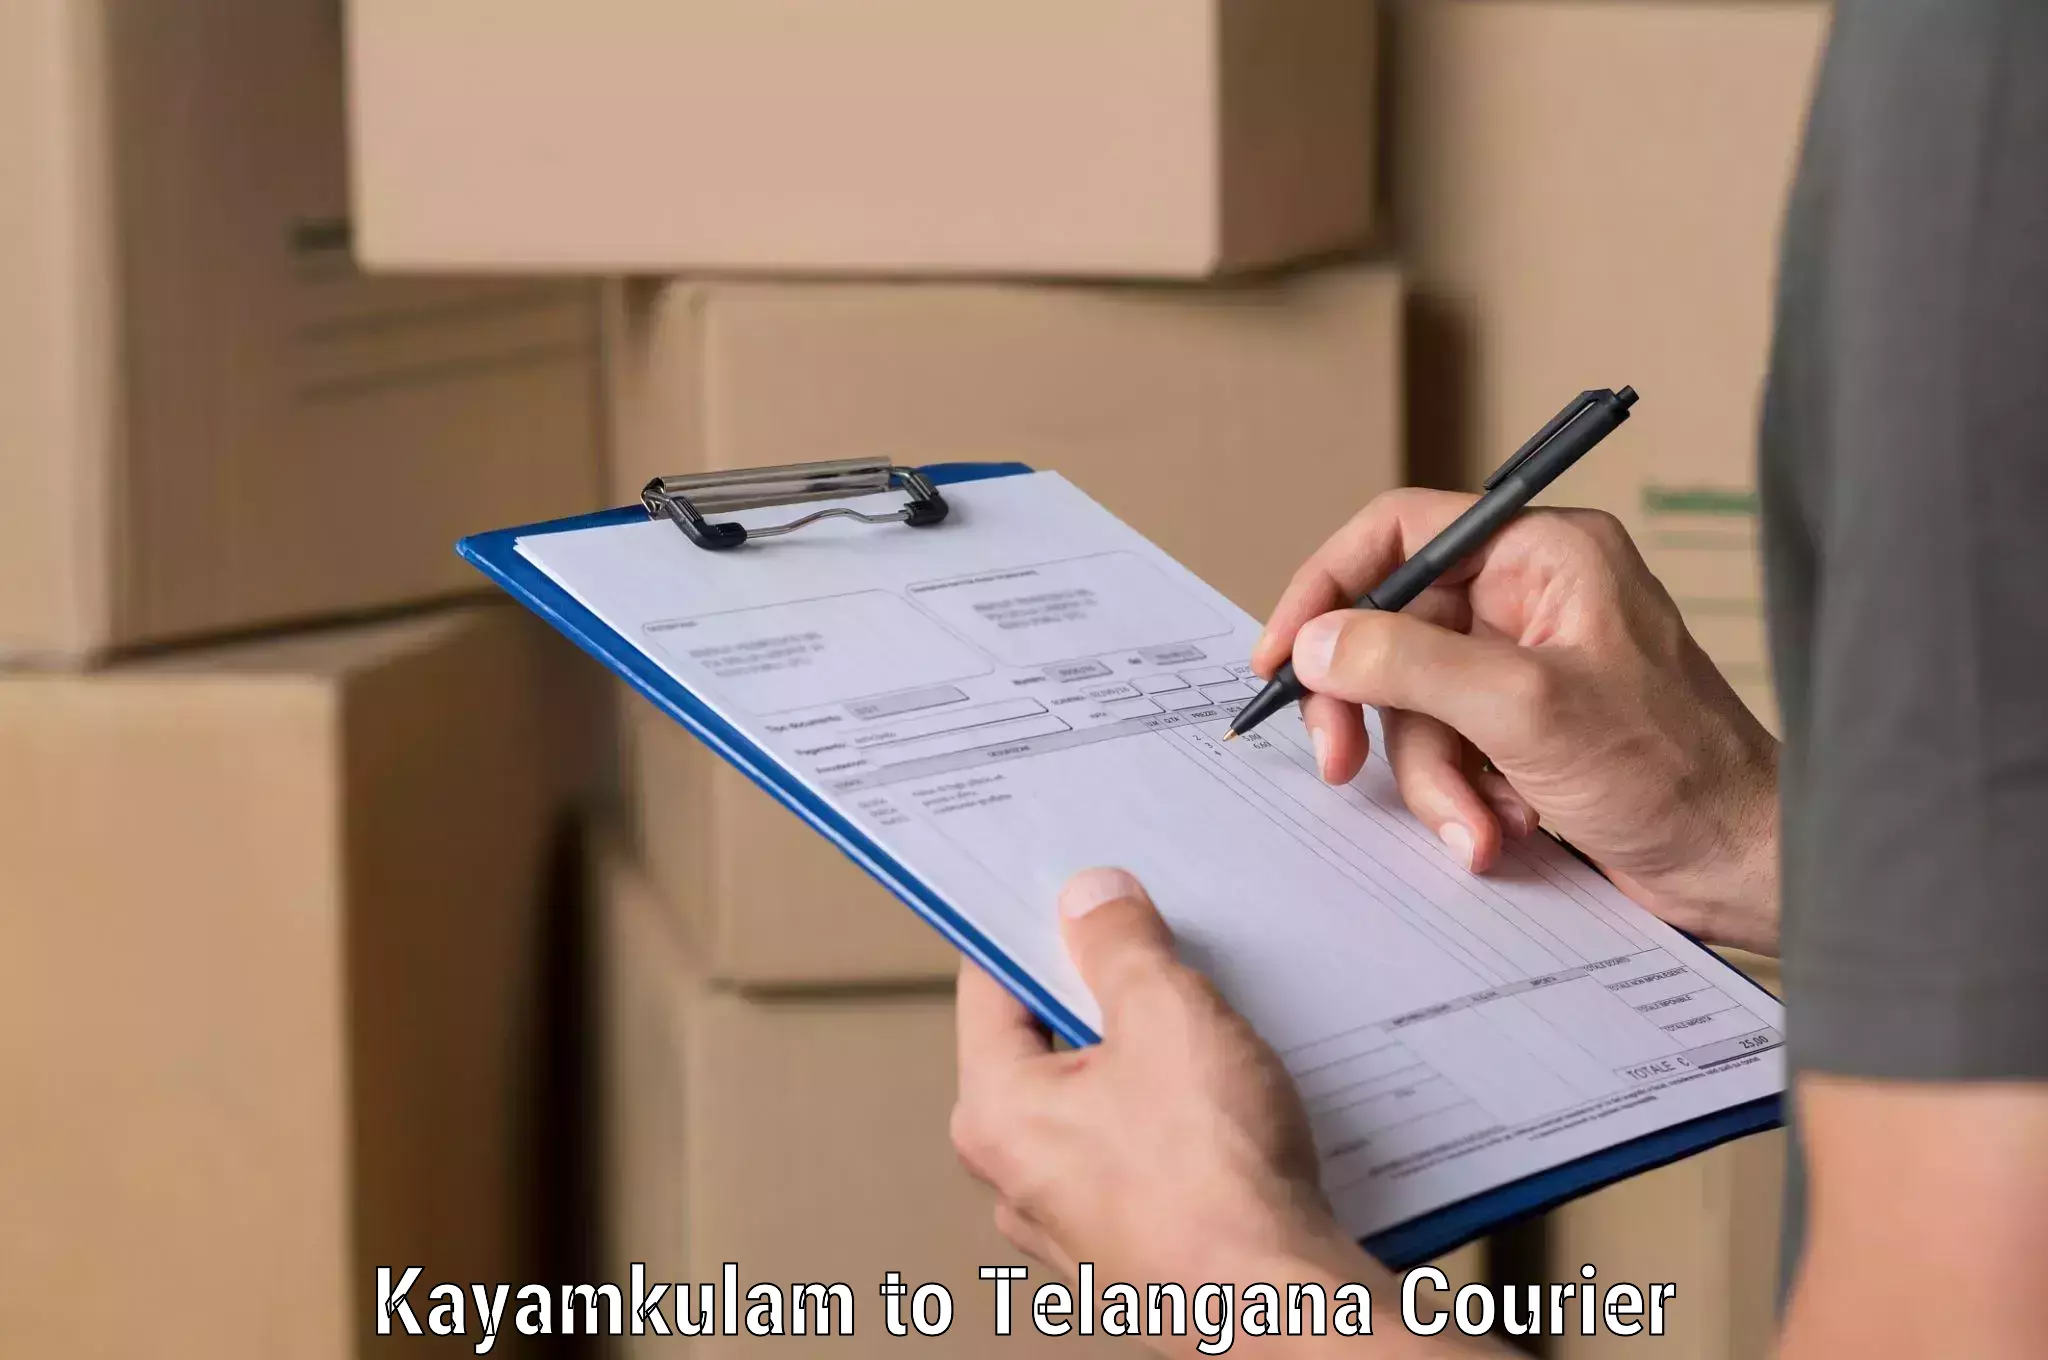 Digital shipping tools Kayamkulam to Telangana